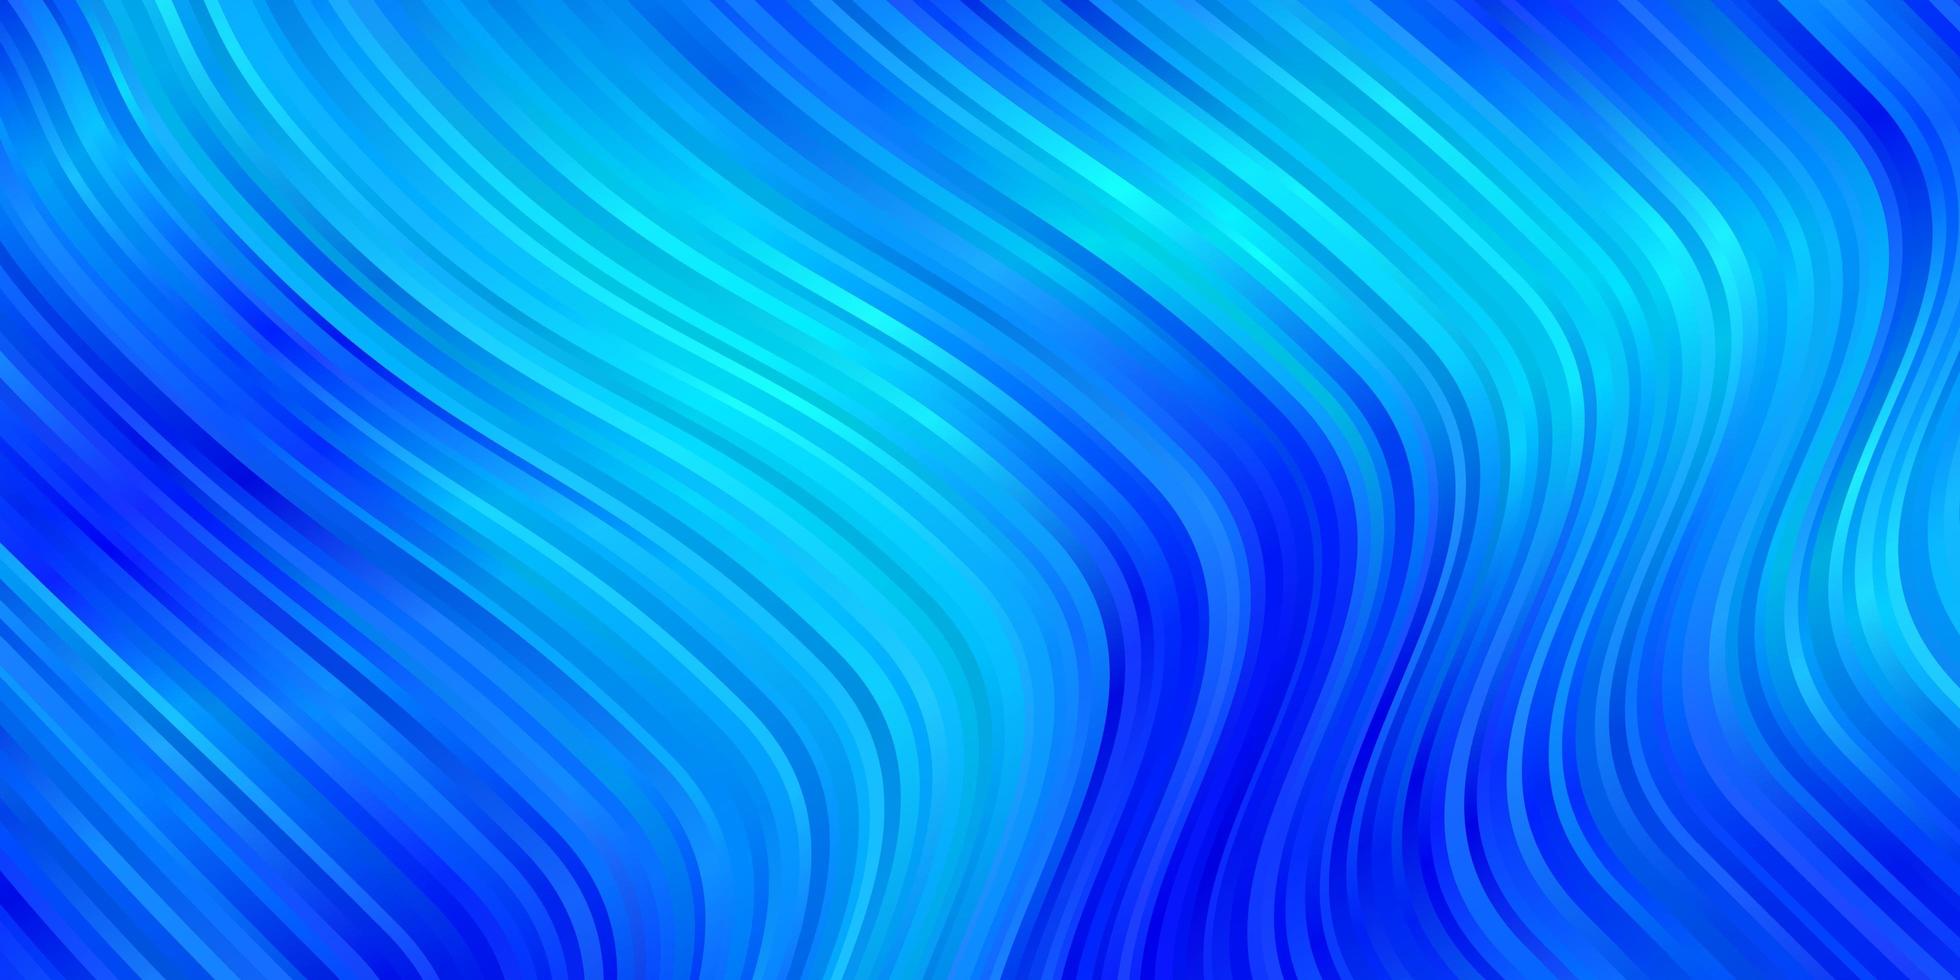 fundo vector azul claro com linhas irônicas.